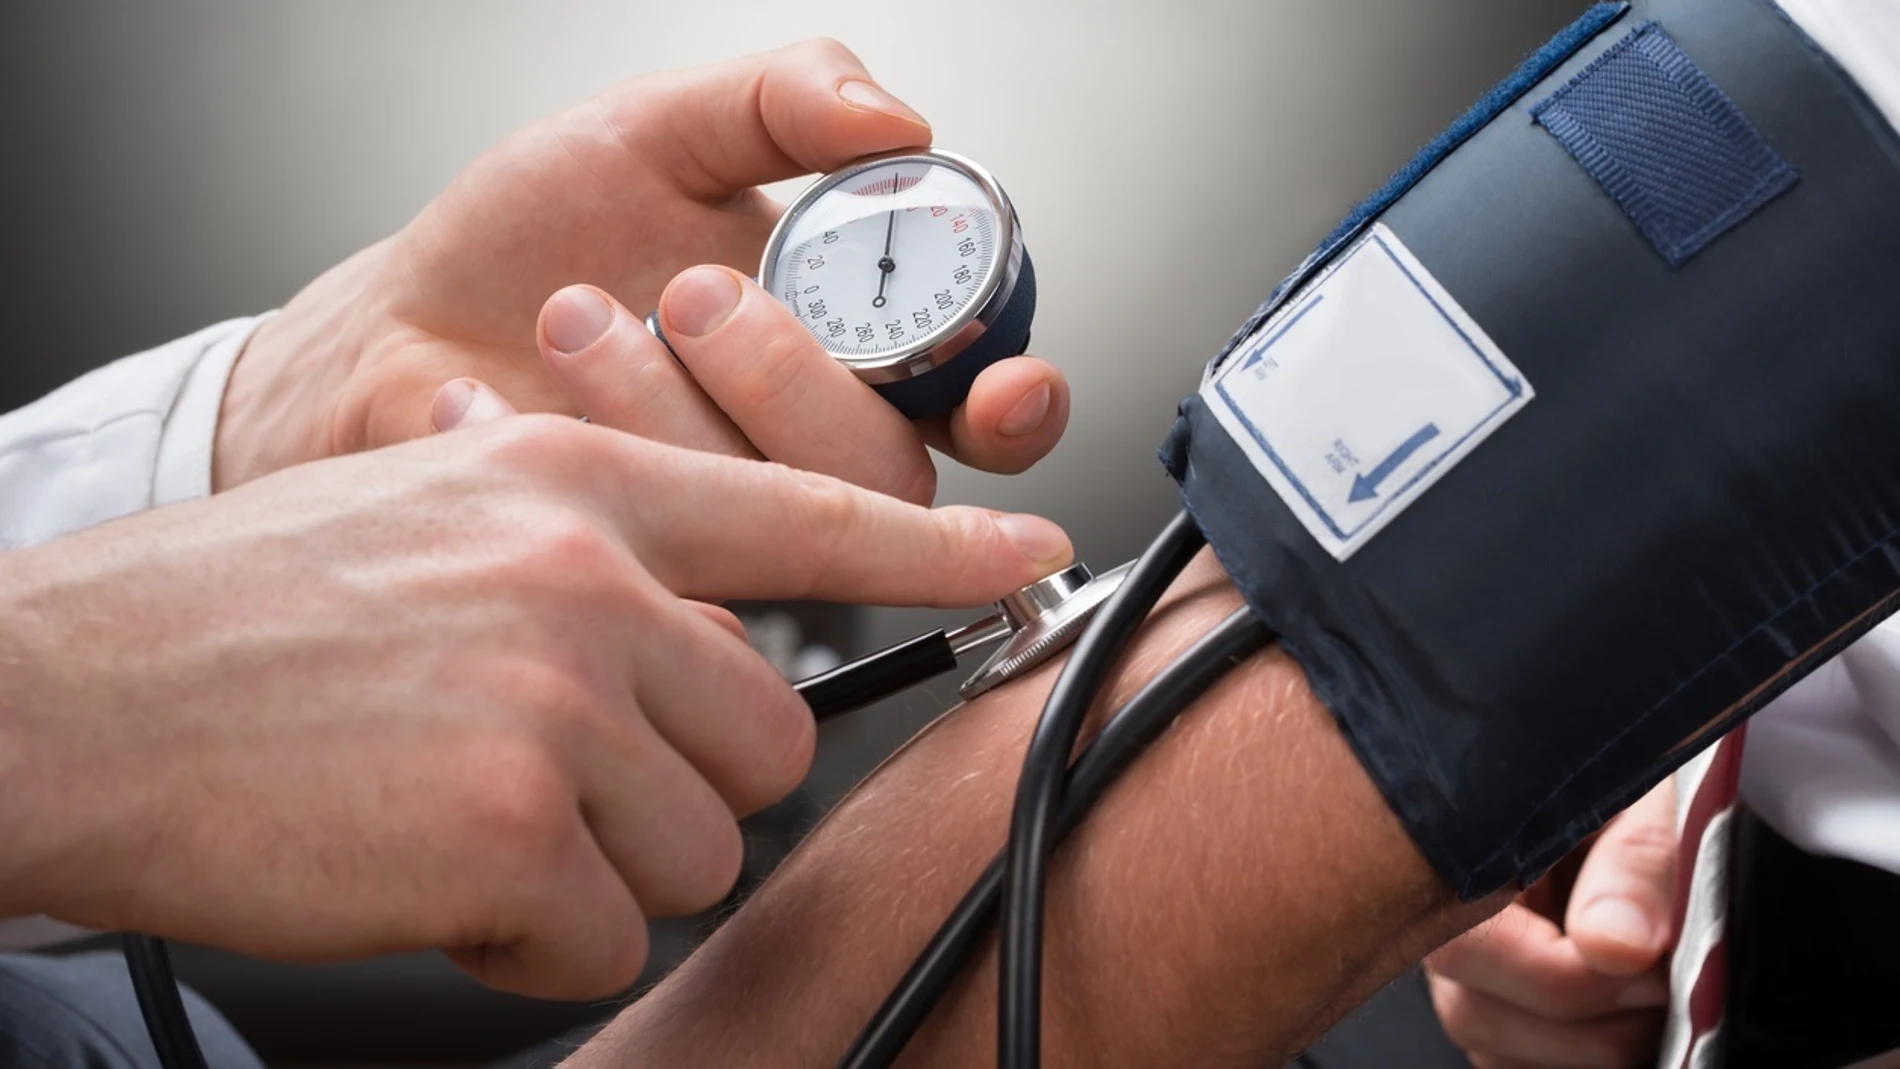 Olvídate de mitos: así puedes (de verdad) cuidar y controlar tu hipertensión